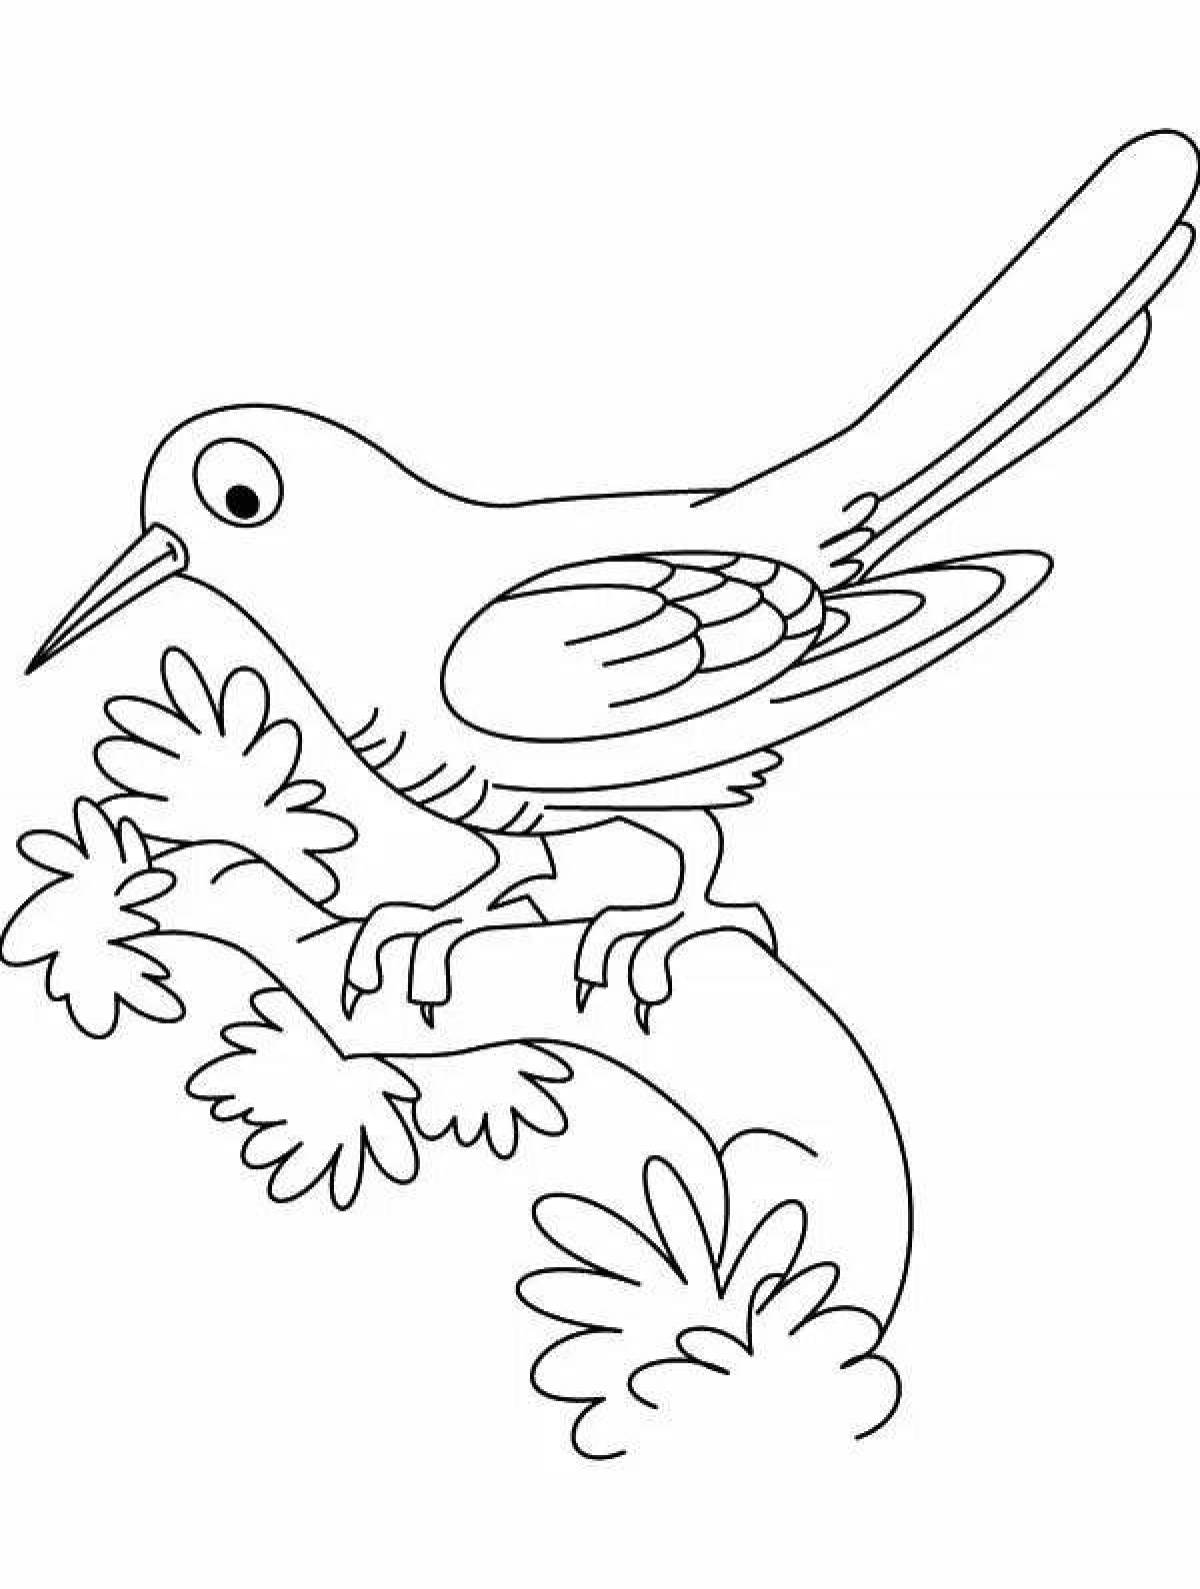 Cuckoo fun coloring book for kids